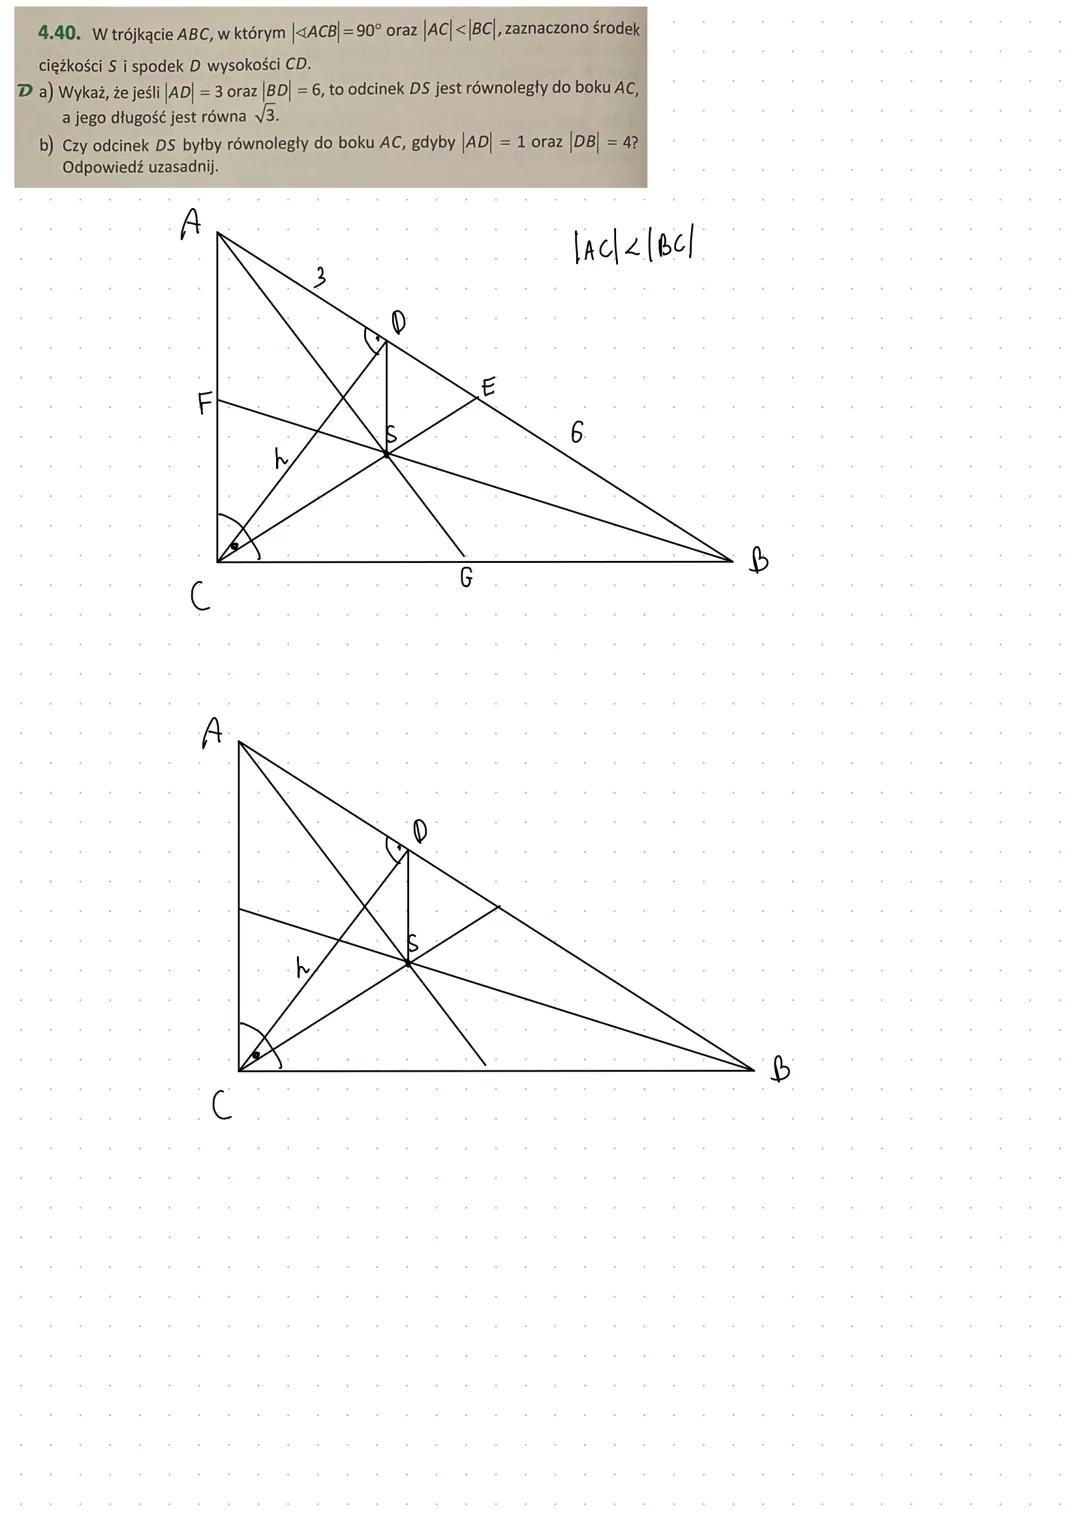 Powtórzenie wiadomości z geometrii z klasy 1
Symetralną odcinka - nazywamy prostą prostopadłą do tego odcinka, dzielącą go na dwie równe czę